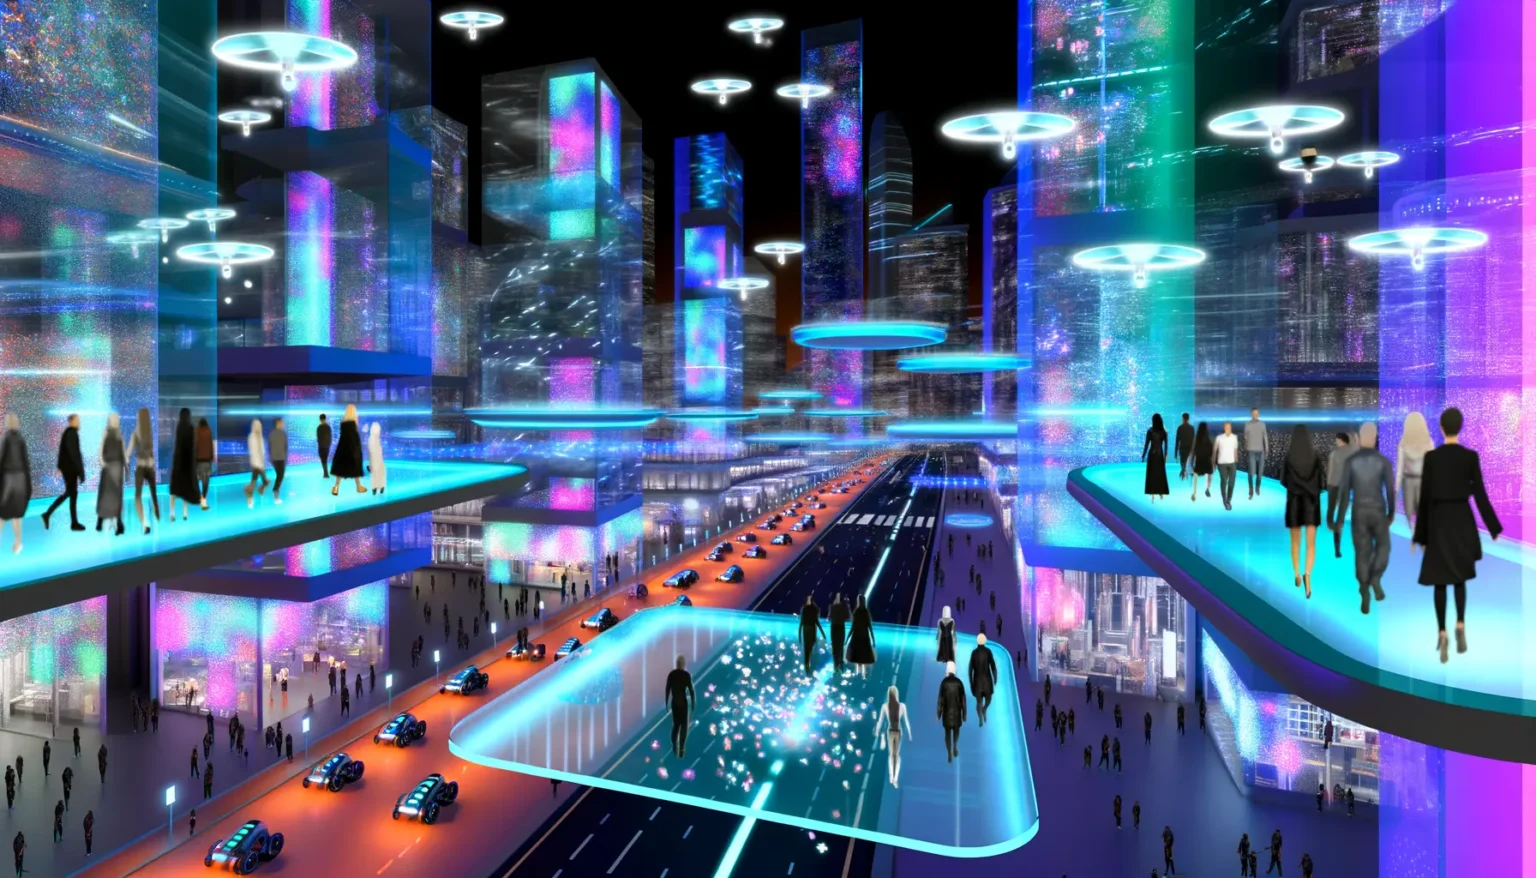 Digitale Kunst einer futuristischen Stadt bei Nacht mit lebendigen, bunten Lichtern, hoch aufragenden Gebäuden mit glitzernden Fassaden und fliegenden Fahrzeugen. Menschen gehen auf transparenten, erhöhten Gehwegen, während unten futuristische Autos auf mehreren Ebenen fahren.